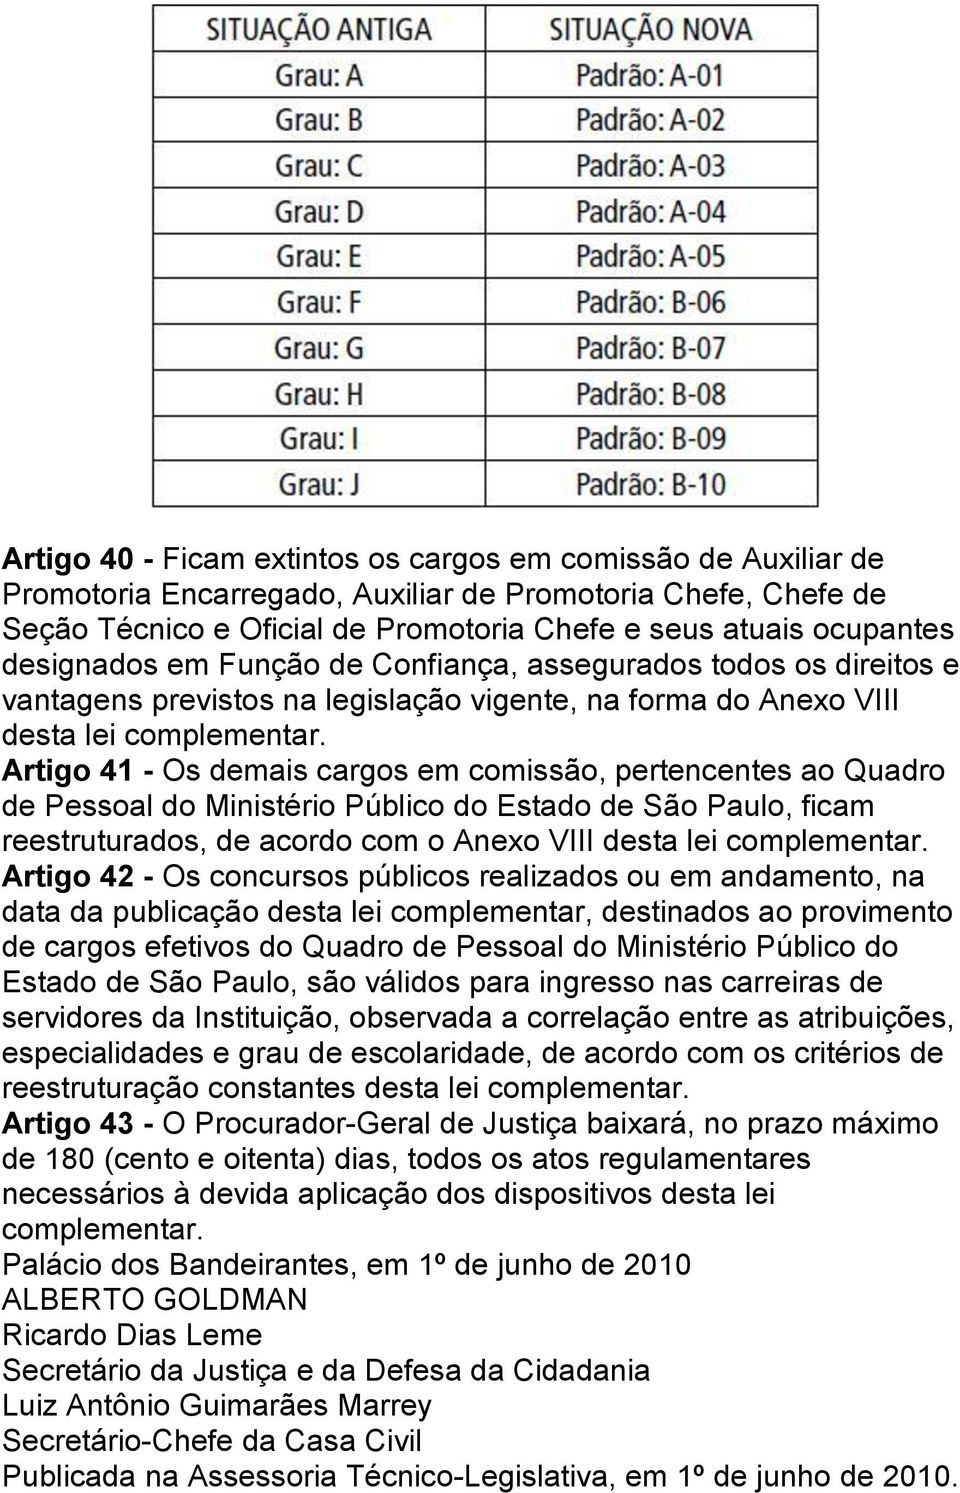 Artigo 41 - Os demais cargos em comissão, pertencentes ao Quadro de Pessoal do Ministério Público do Estado de São Paulo, ficam reestruturados, de acordo com o Anexo VIII desta lei complementar.